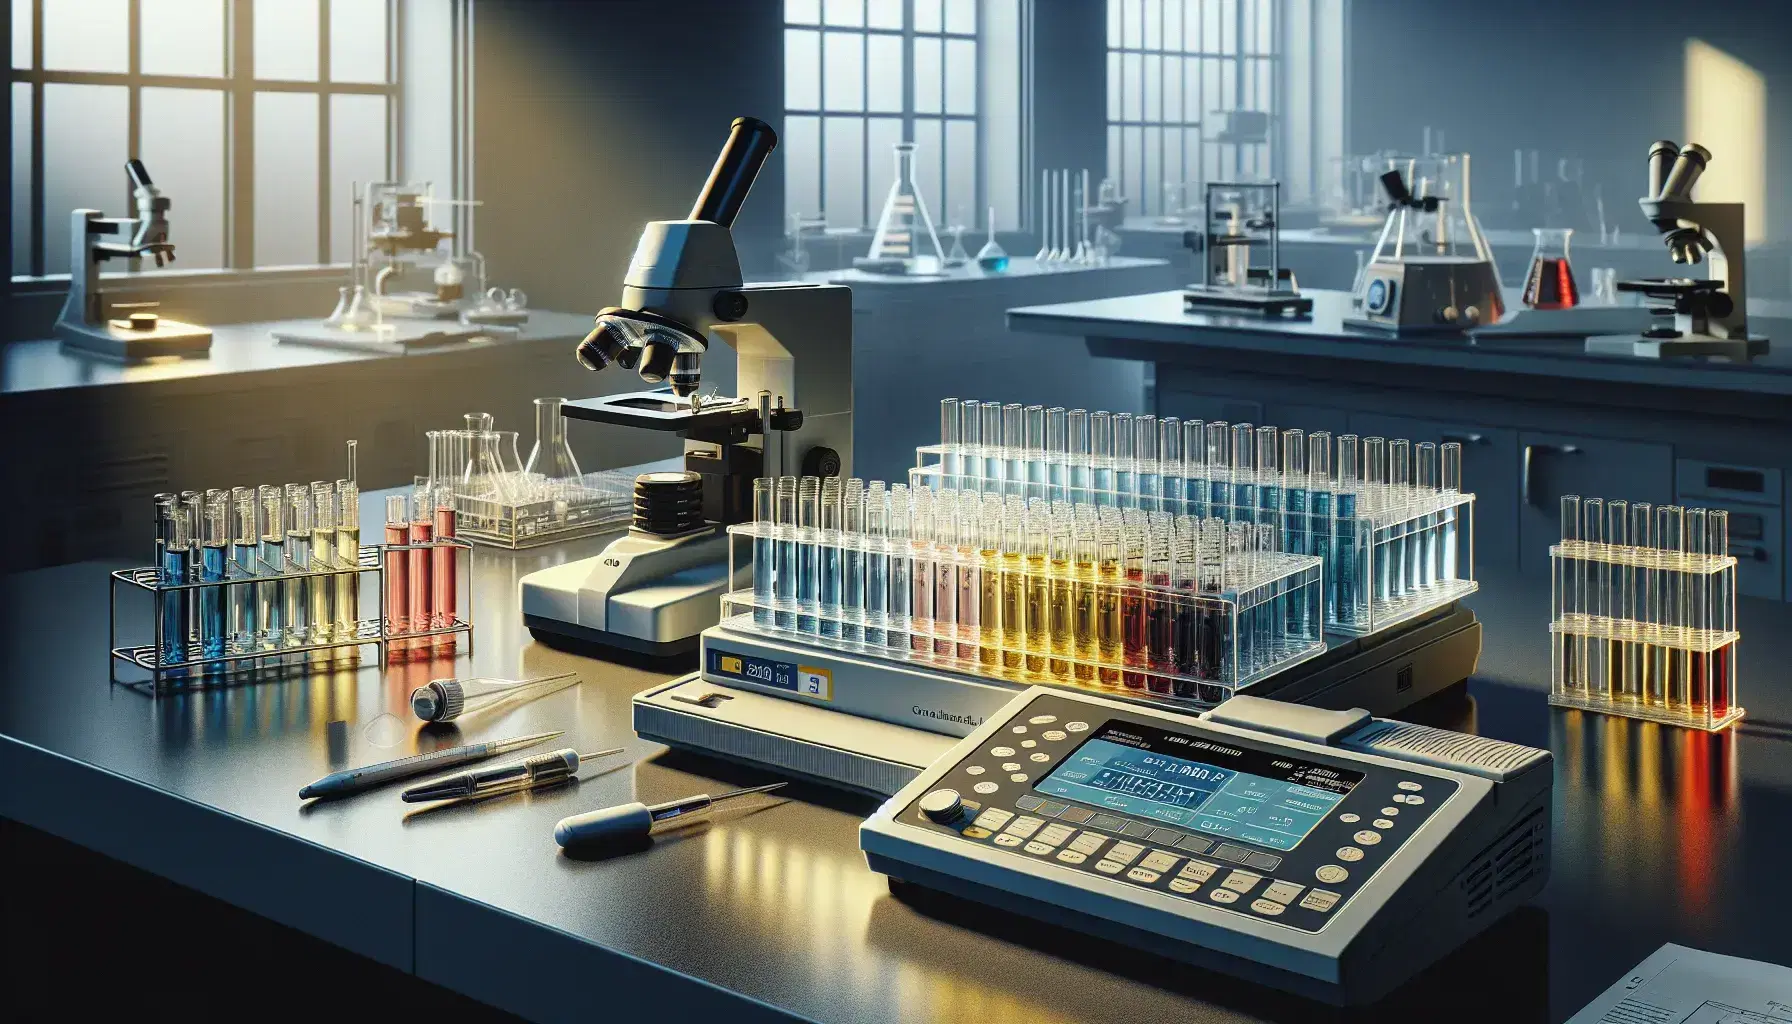 Laboratorio científico con espectrofotómetro, tubos de ensayo con líquidos coloridos, microscopio y balanza analítica reflejando precisión en bioquímica.